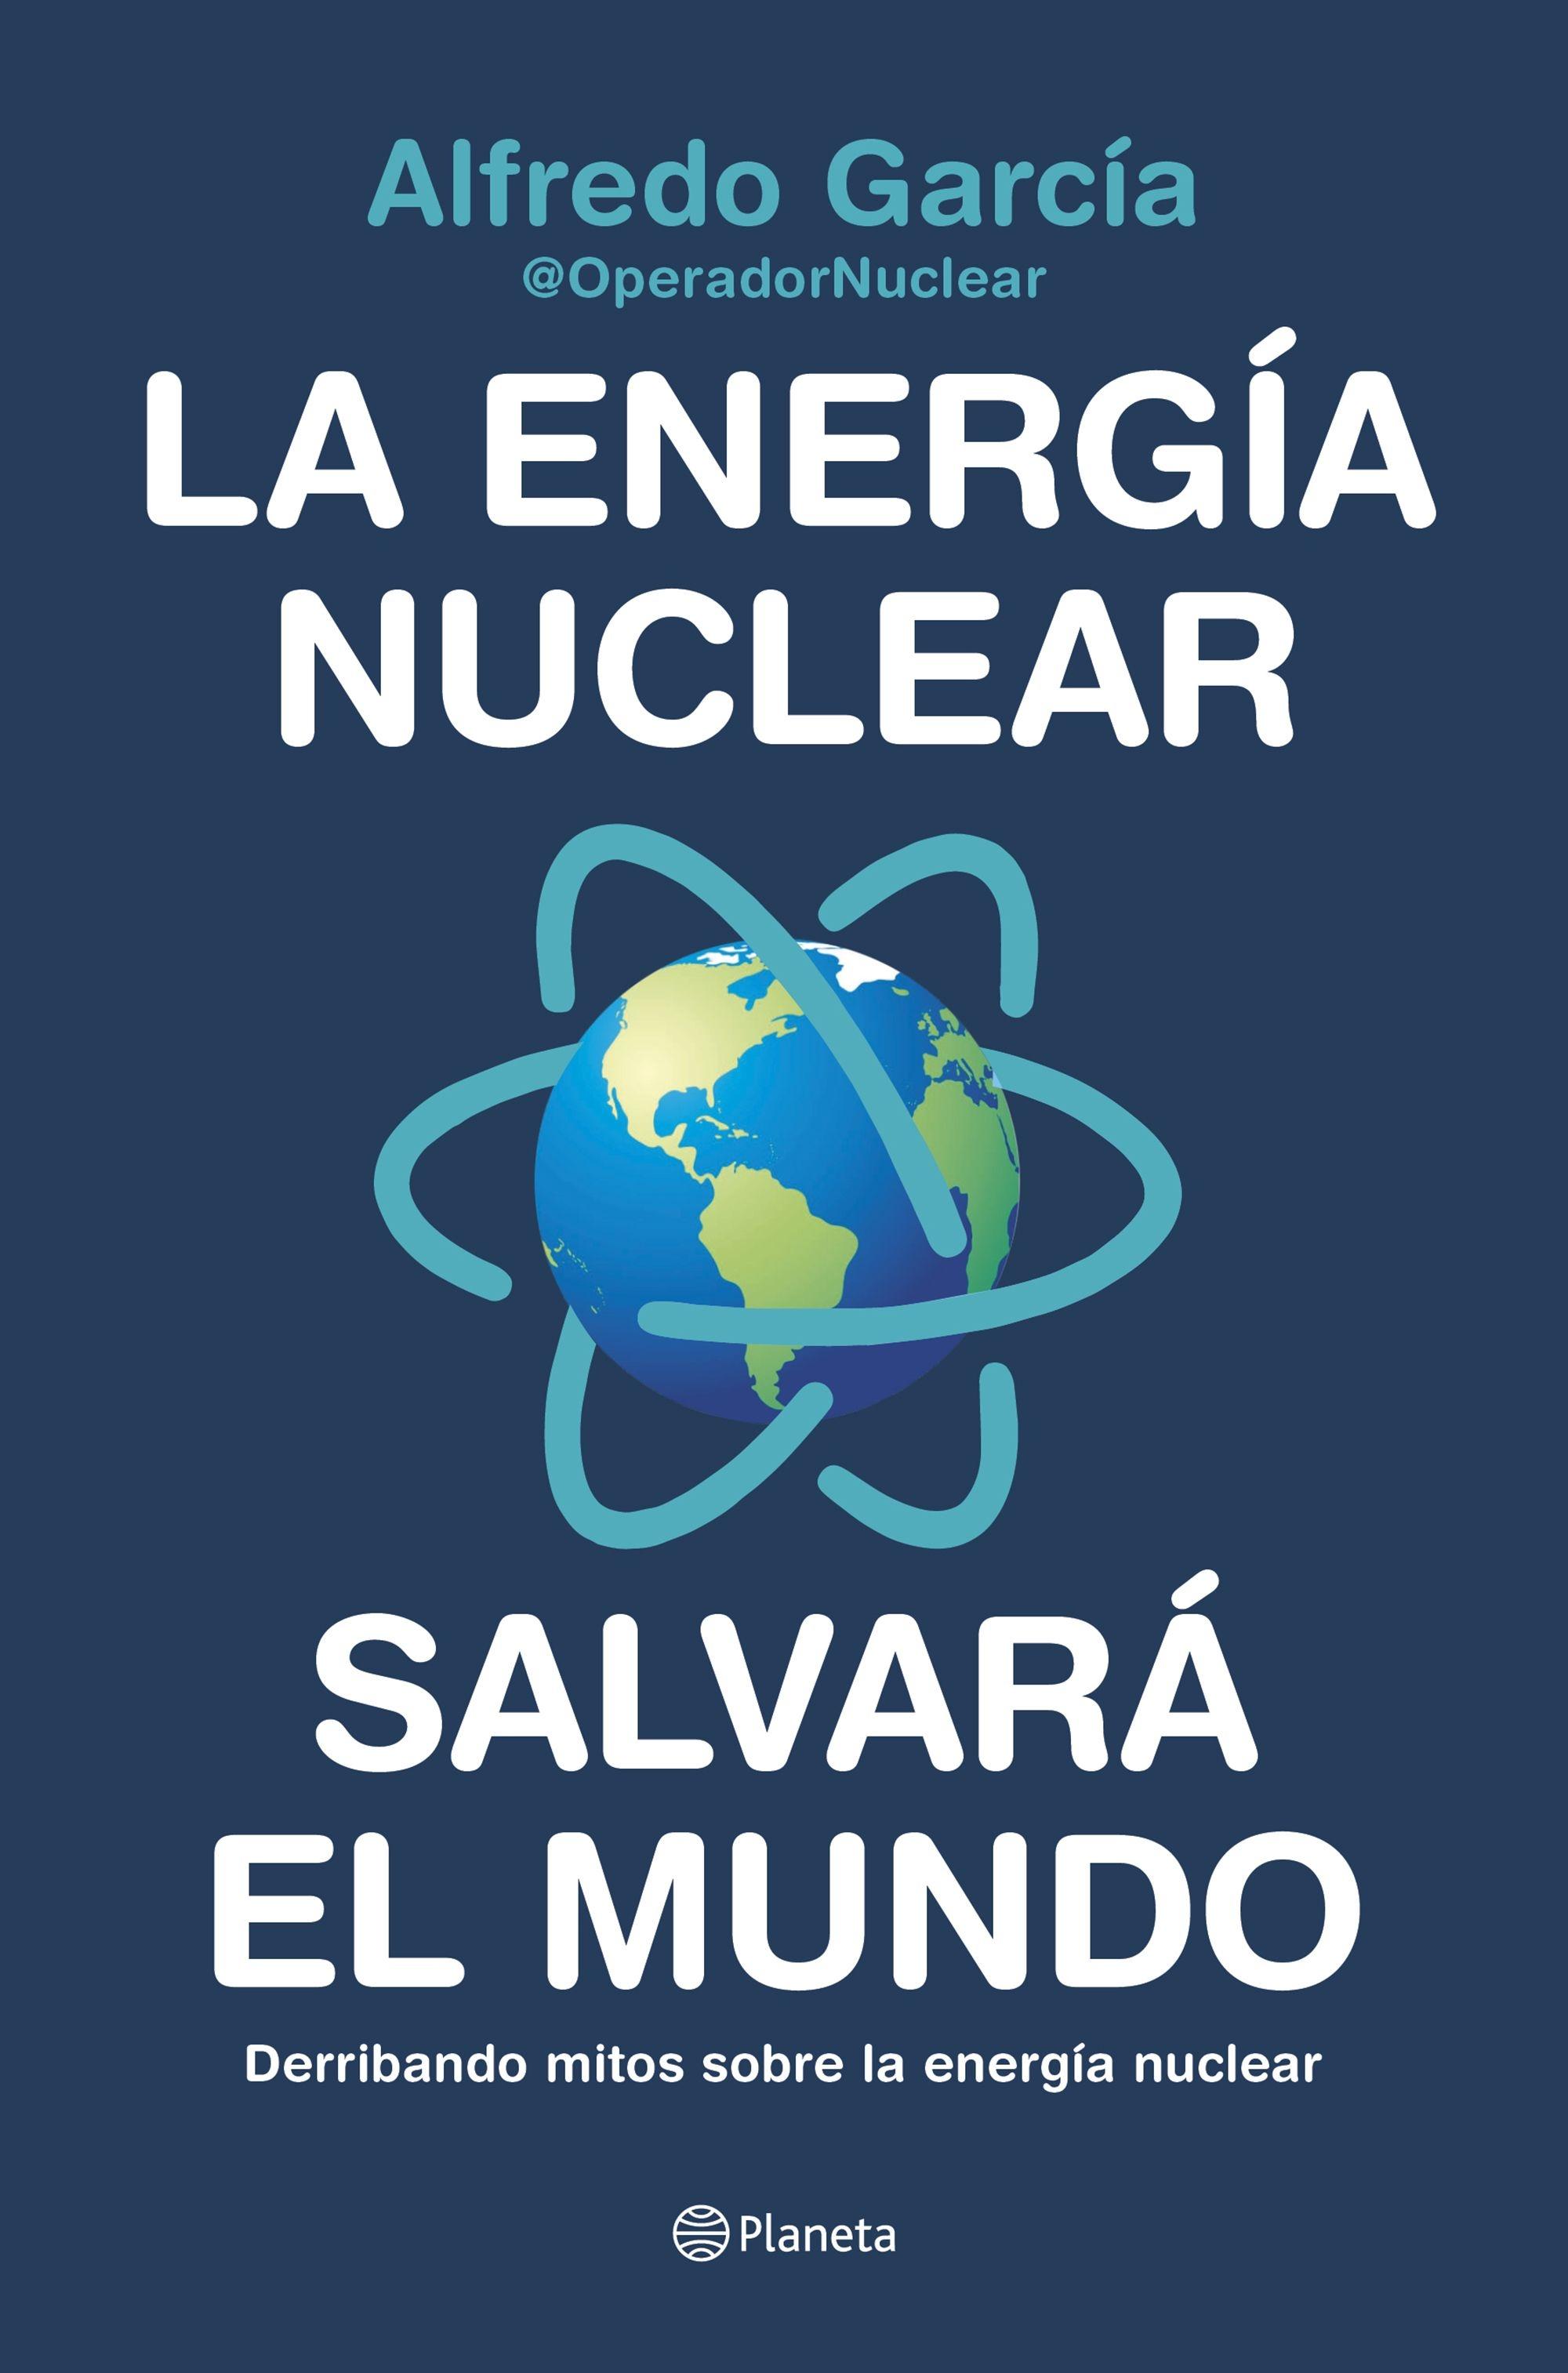 ENERGÍA NUCLEAR SALVARÁ EL MUNDO, LA "DERRIBANDO MITOS SOBRE LA ENERGÍA NUCLEAR"